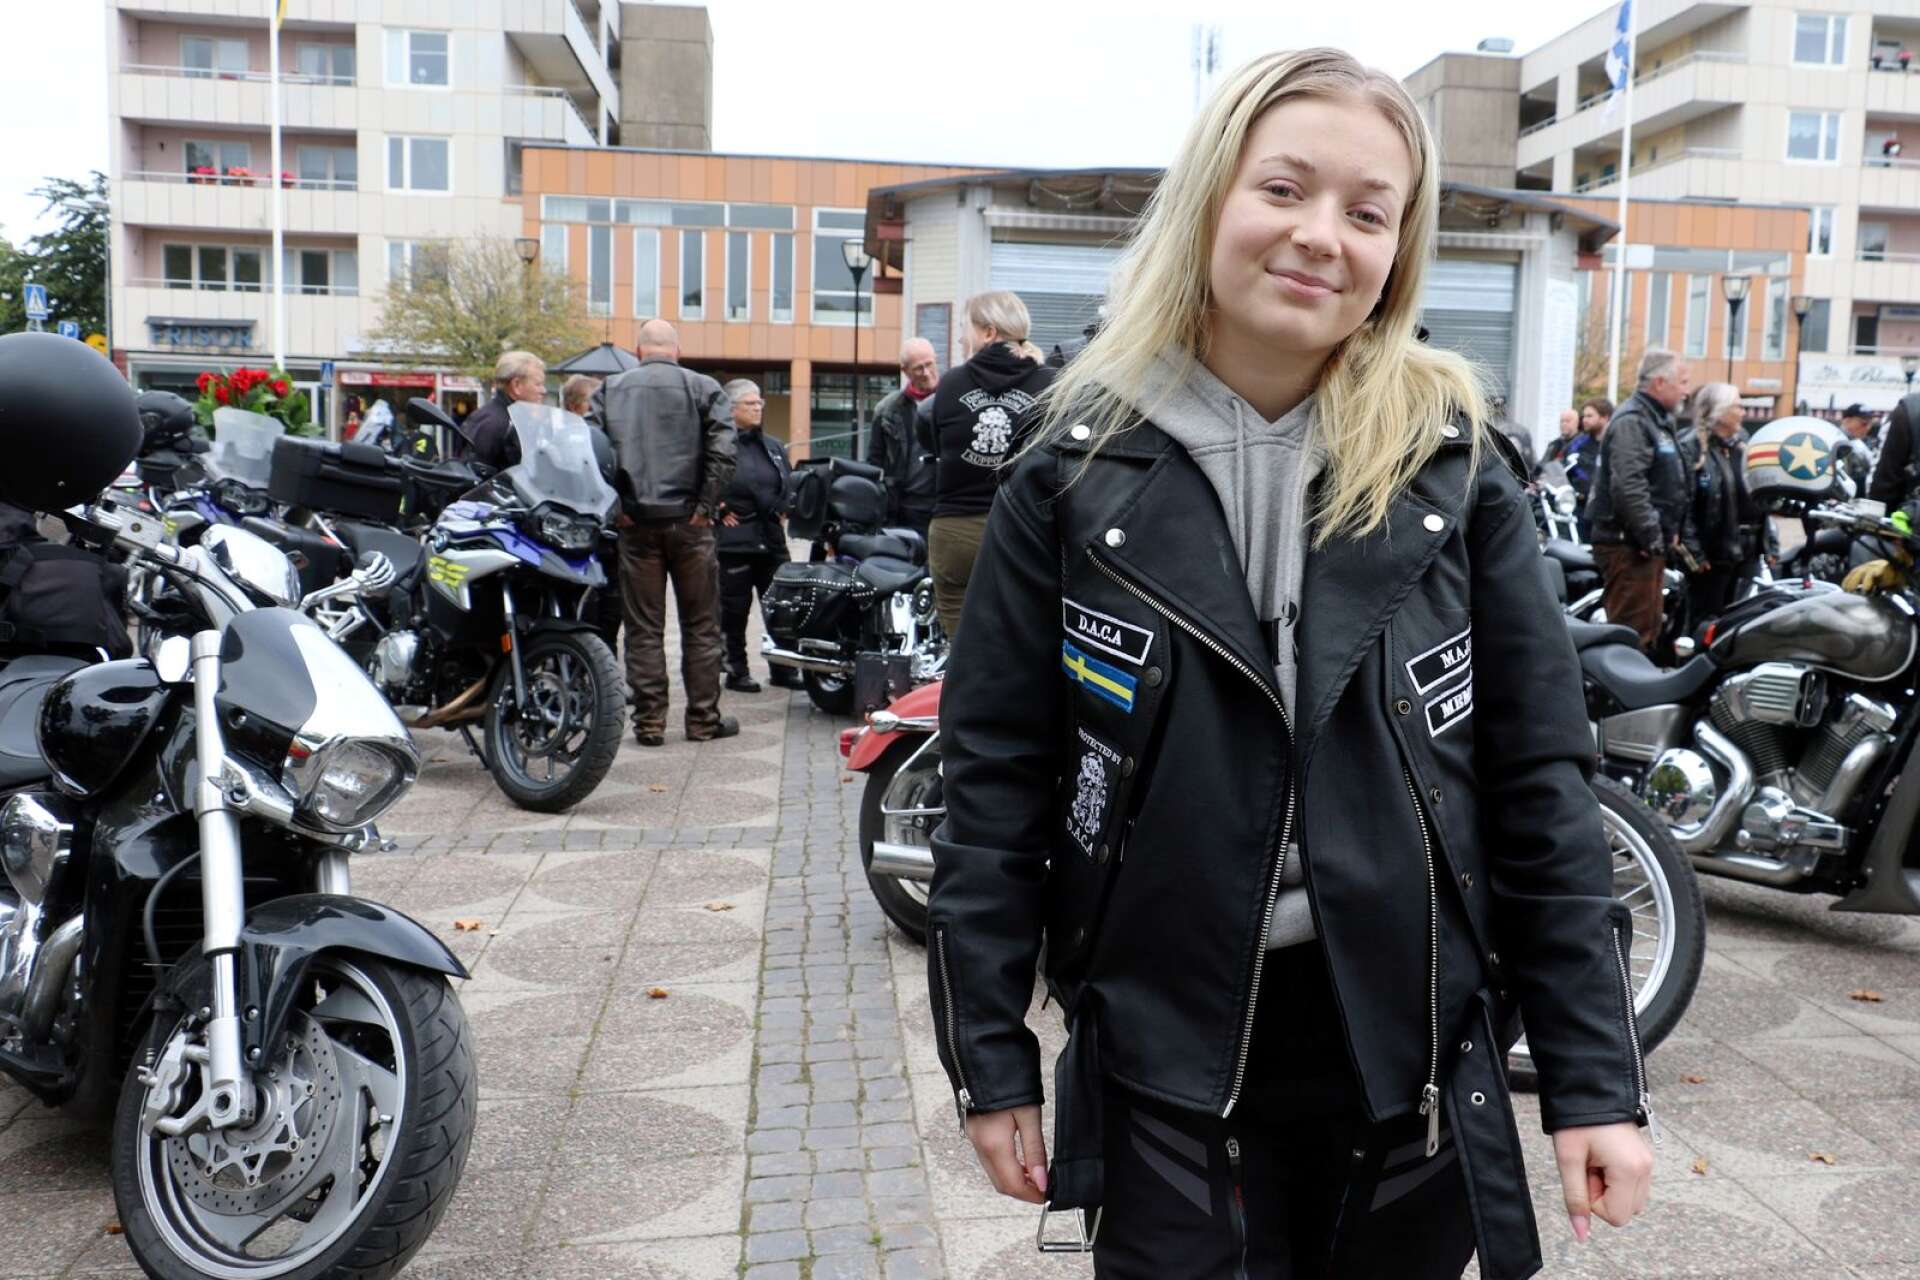 Under helgen kördes en mc-kortege för att manifestera mot mobbning. 17-åriga Maja Eriksson, som själv blivit mobbad, var initiativtagare tillsammans med organisationen DACA (Drivers against child abuse) och BMM (Bikers mot mobbning).